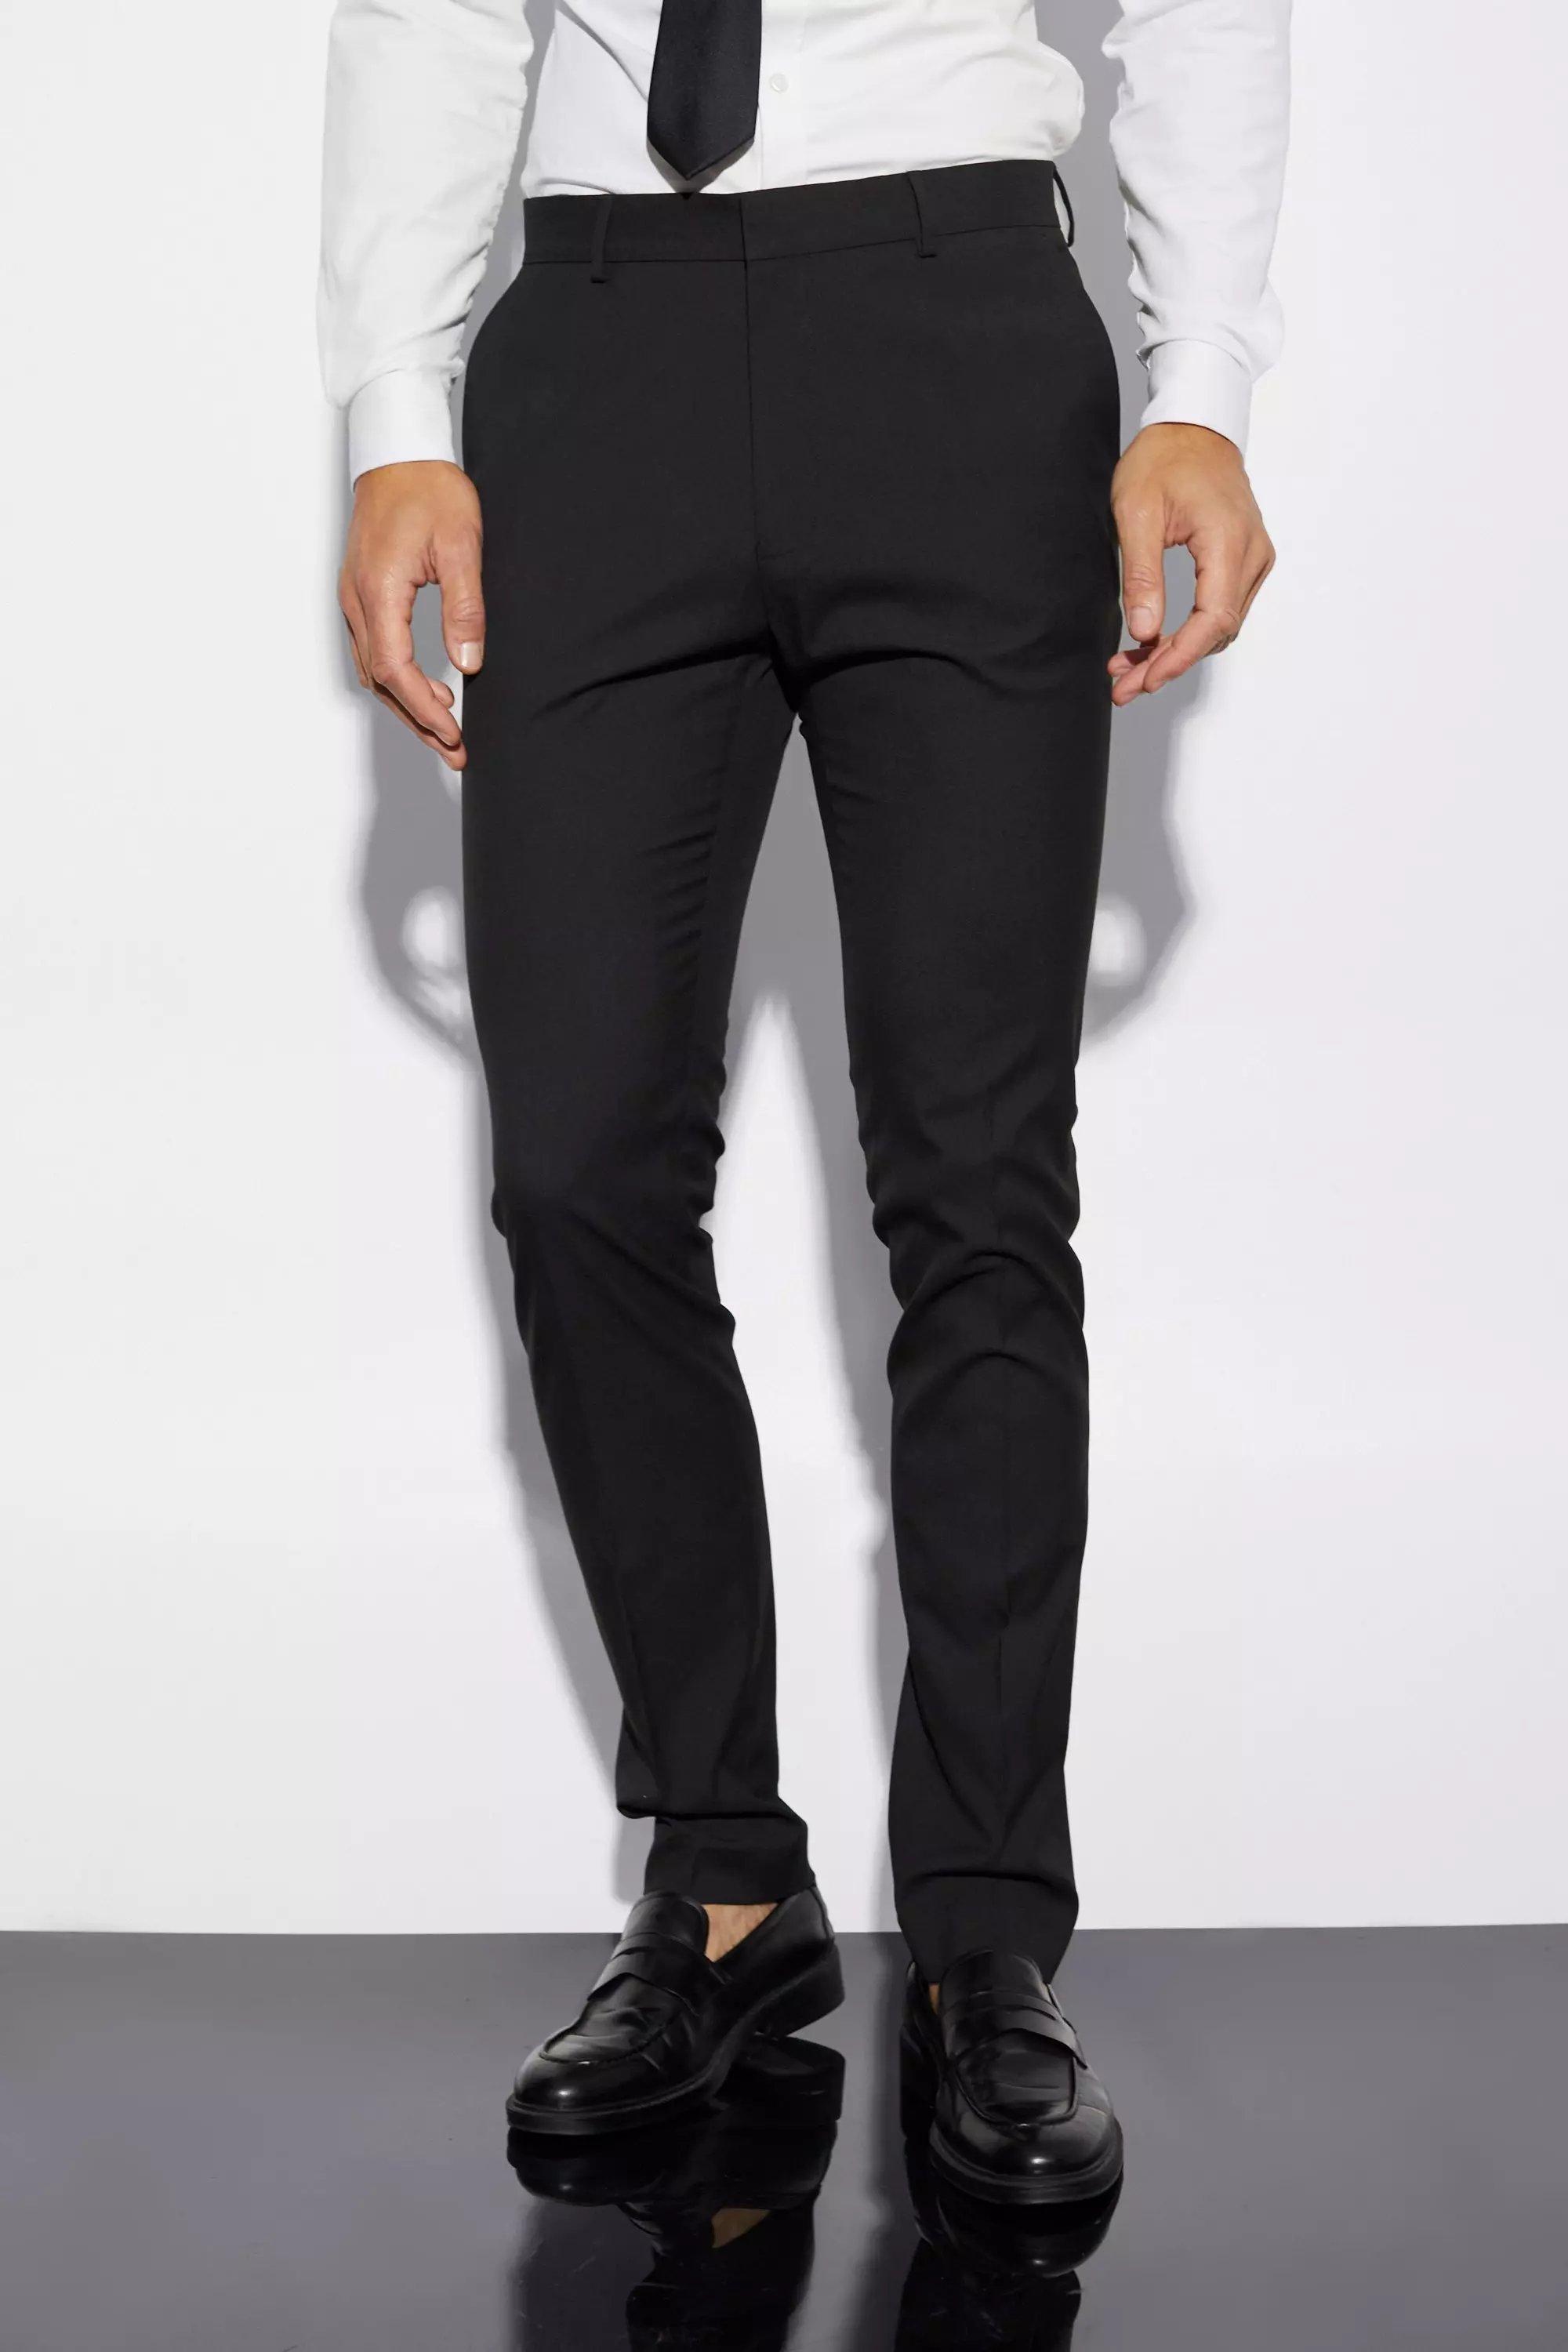 Plaid&Plain Men's Stretch Dress Pants Slim Fit Skinny Suit Pants – The Frum  Shopper